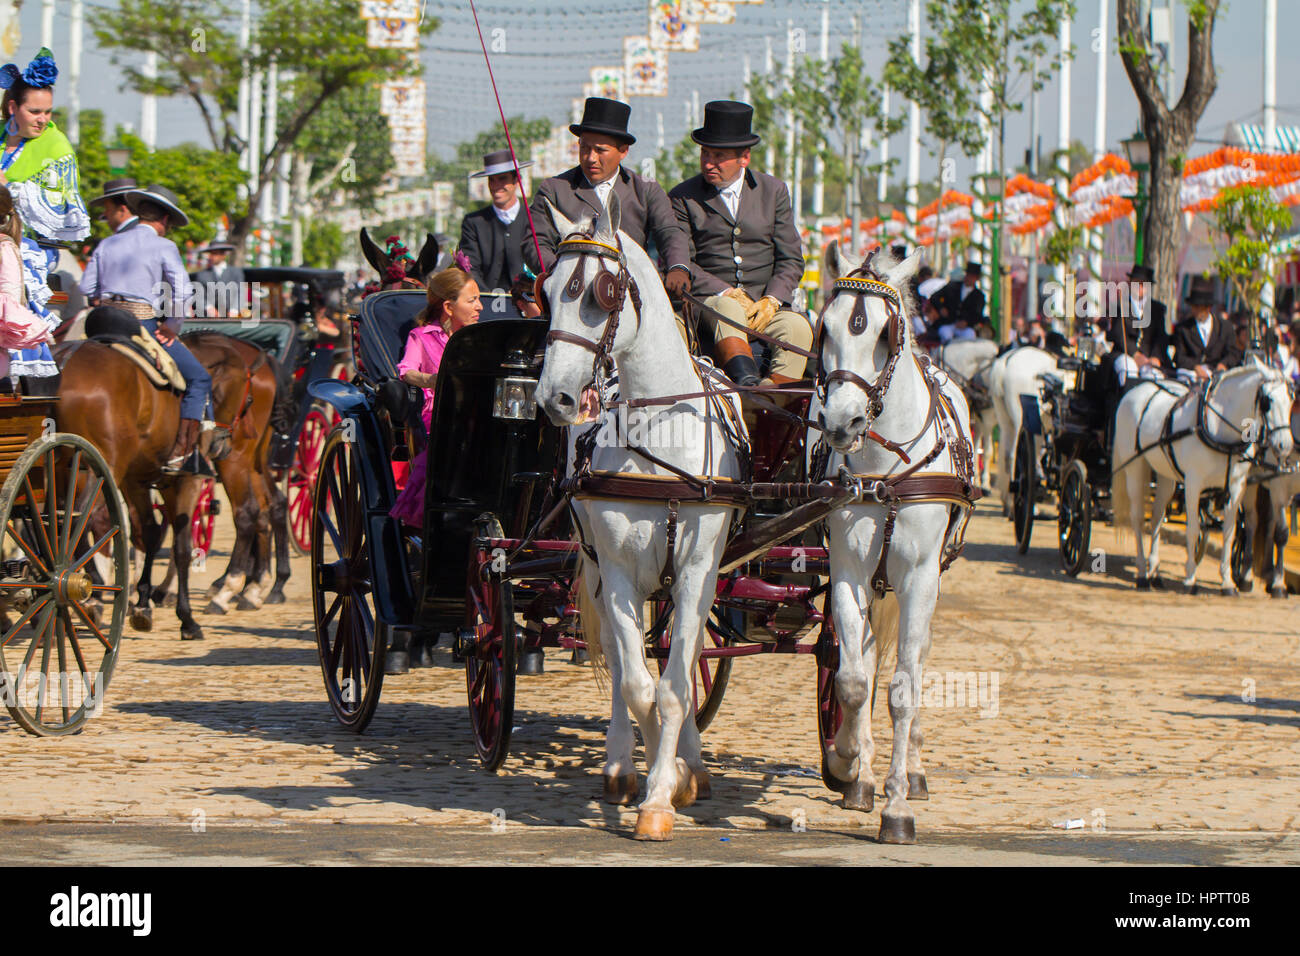 Sevilla, Spanien - 25 APR: Leute gekleidet in traditionellen Kostümen Reiten Pferdekutschen auf der Feria de Abril am 25. April 2014 in Sevilla, Spanien Stockfoto